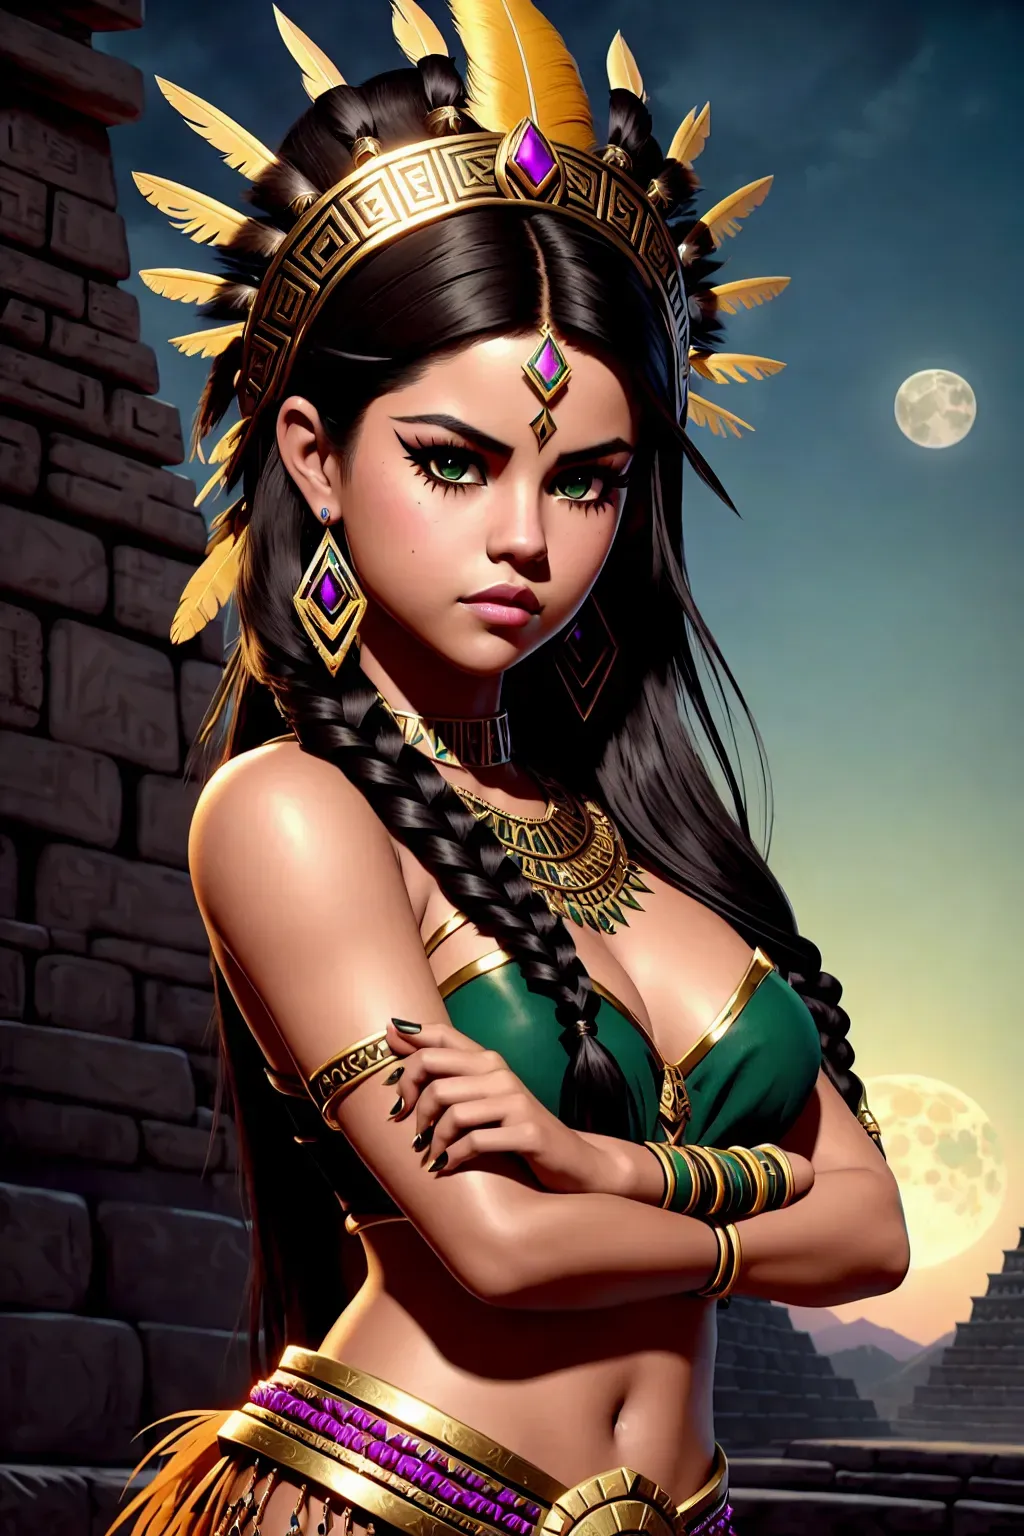 Aztec Princess - Jugar en línea - Revisión de máquinas tragamonedas de casino